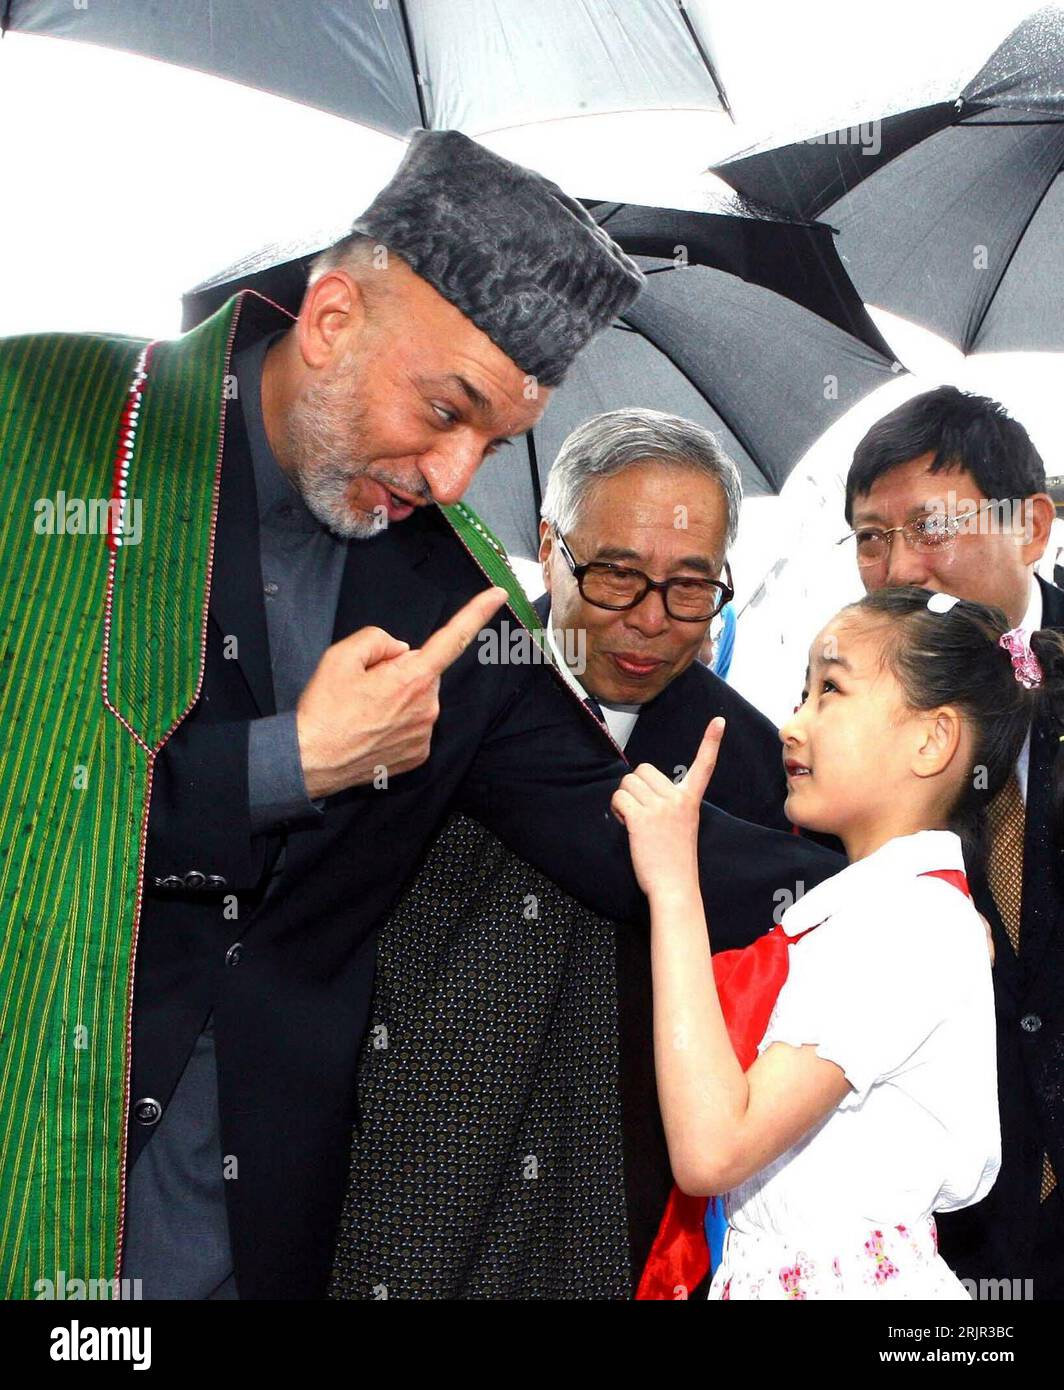 Bildnummer: 51284406 Datum: 14.06.2006 Copyright: Imago/Xinhua Staatspräsident Hamid Karzai (li., AFG) wird von einer chinesischen Schülerin begrüßt und beide heben mahnend den Zeigefinger während seiner Ankunft auf dem Pudong International Airport in Shanghai PUBLICATIONxNOTxINxCHN, Personalidad; Fretisch , 2006 , Fretisch , Freude , Shanghai, Politiker, Politik, lächeln, Gestik, Zeigefinger, Fingerzeig; , hoch, Kbdig, Gruppenbild, close, China, Randbild, Personas O0 kurios, mahnen, ermahnen Foto de stock